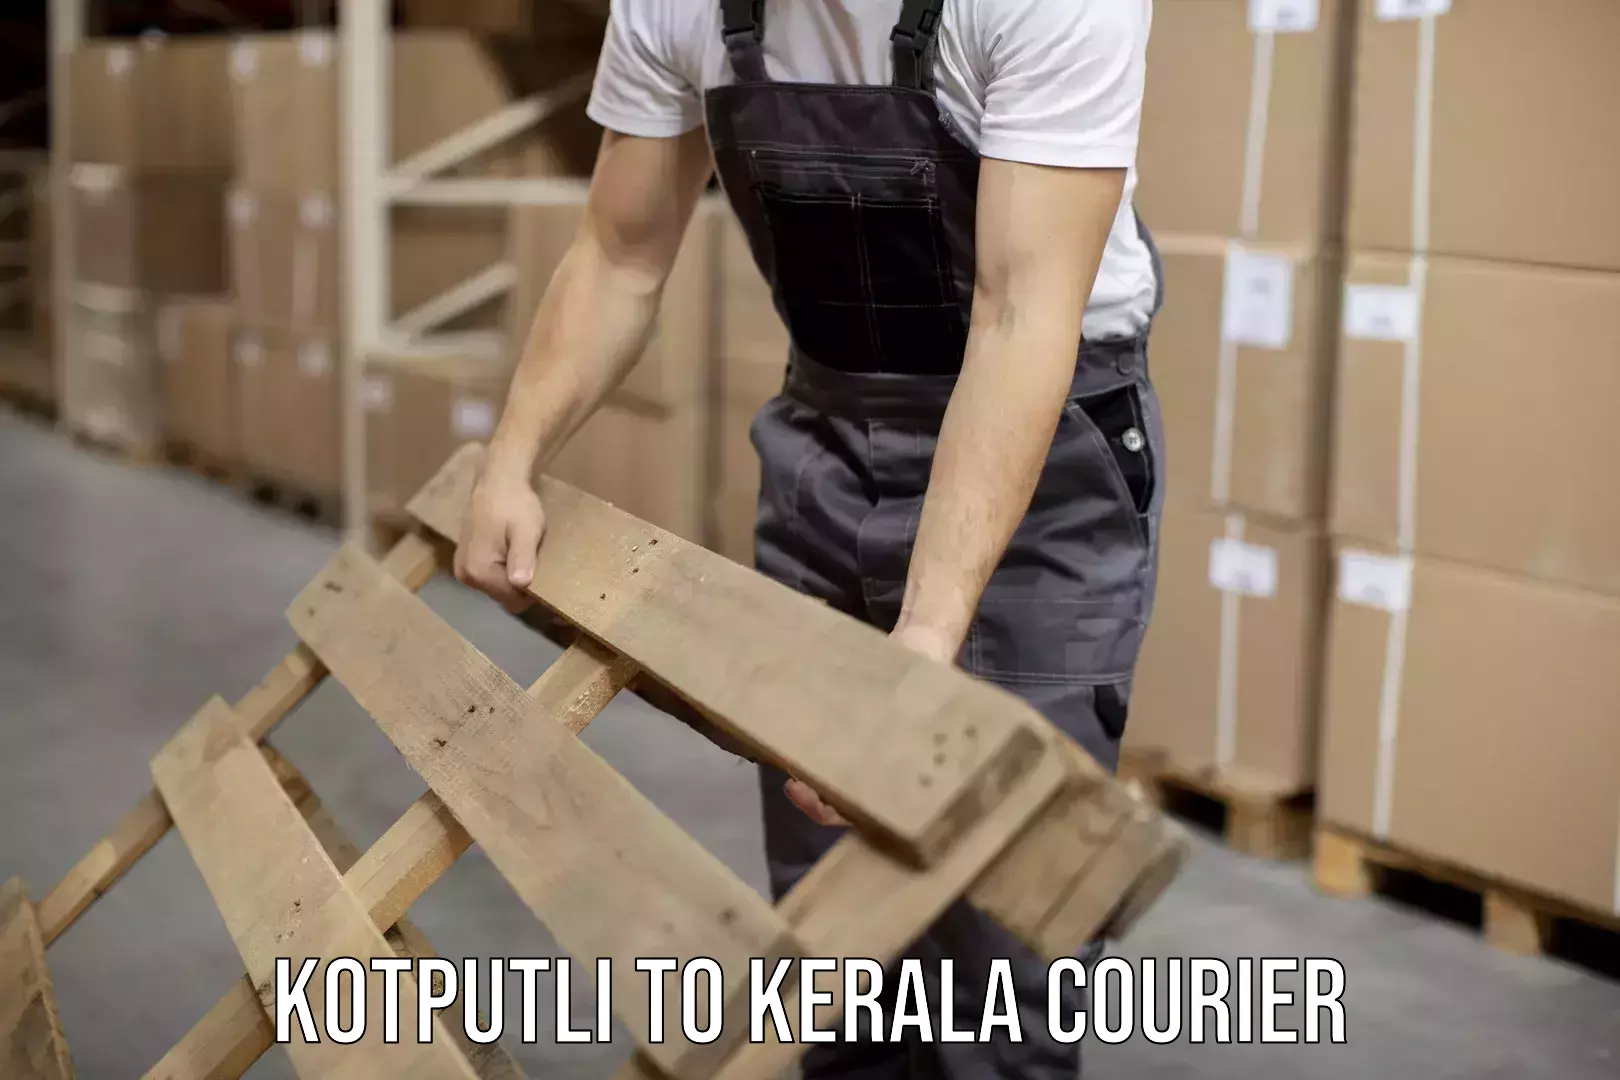 Nationwide shipping capabilities Kotputli to Puthukkad